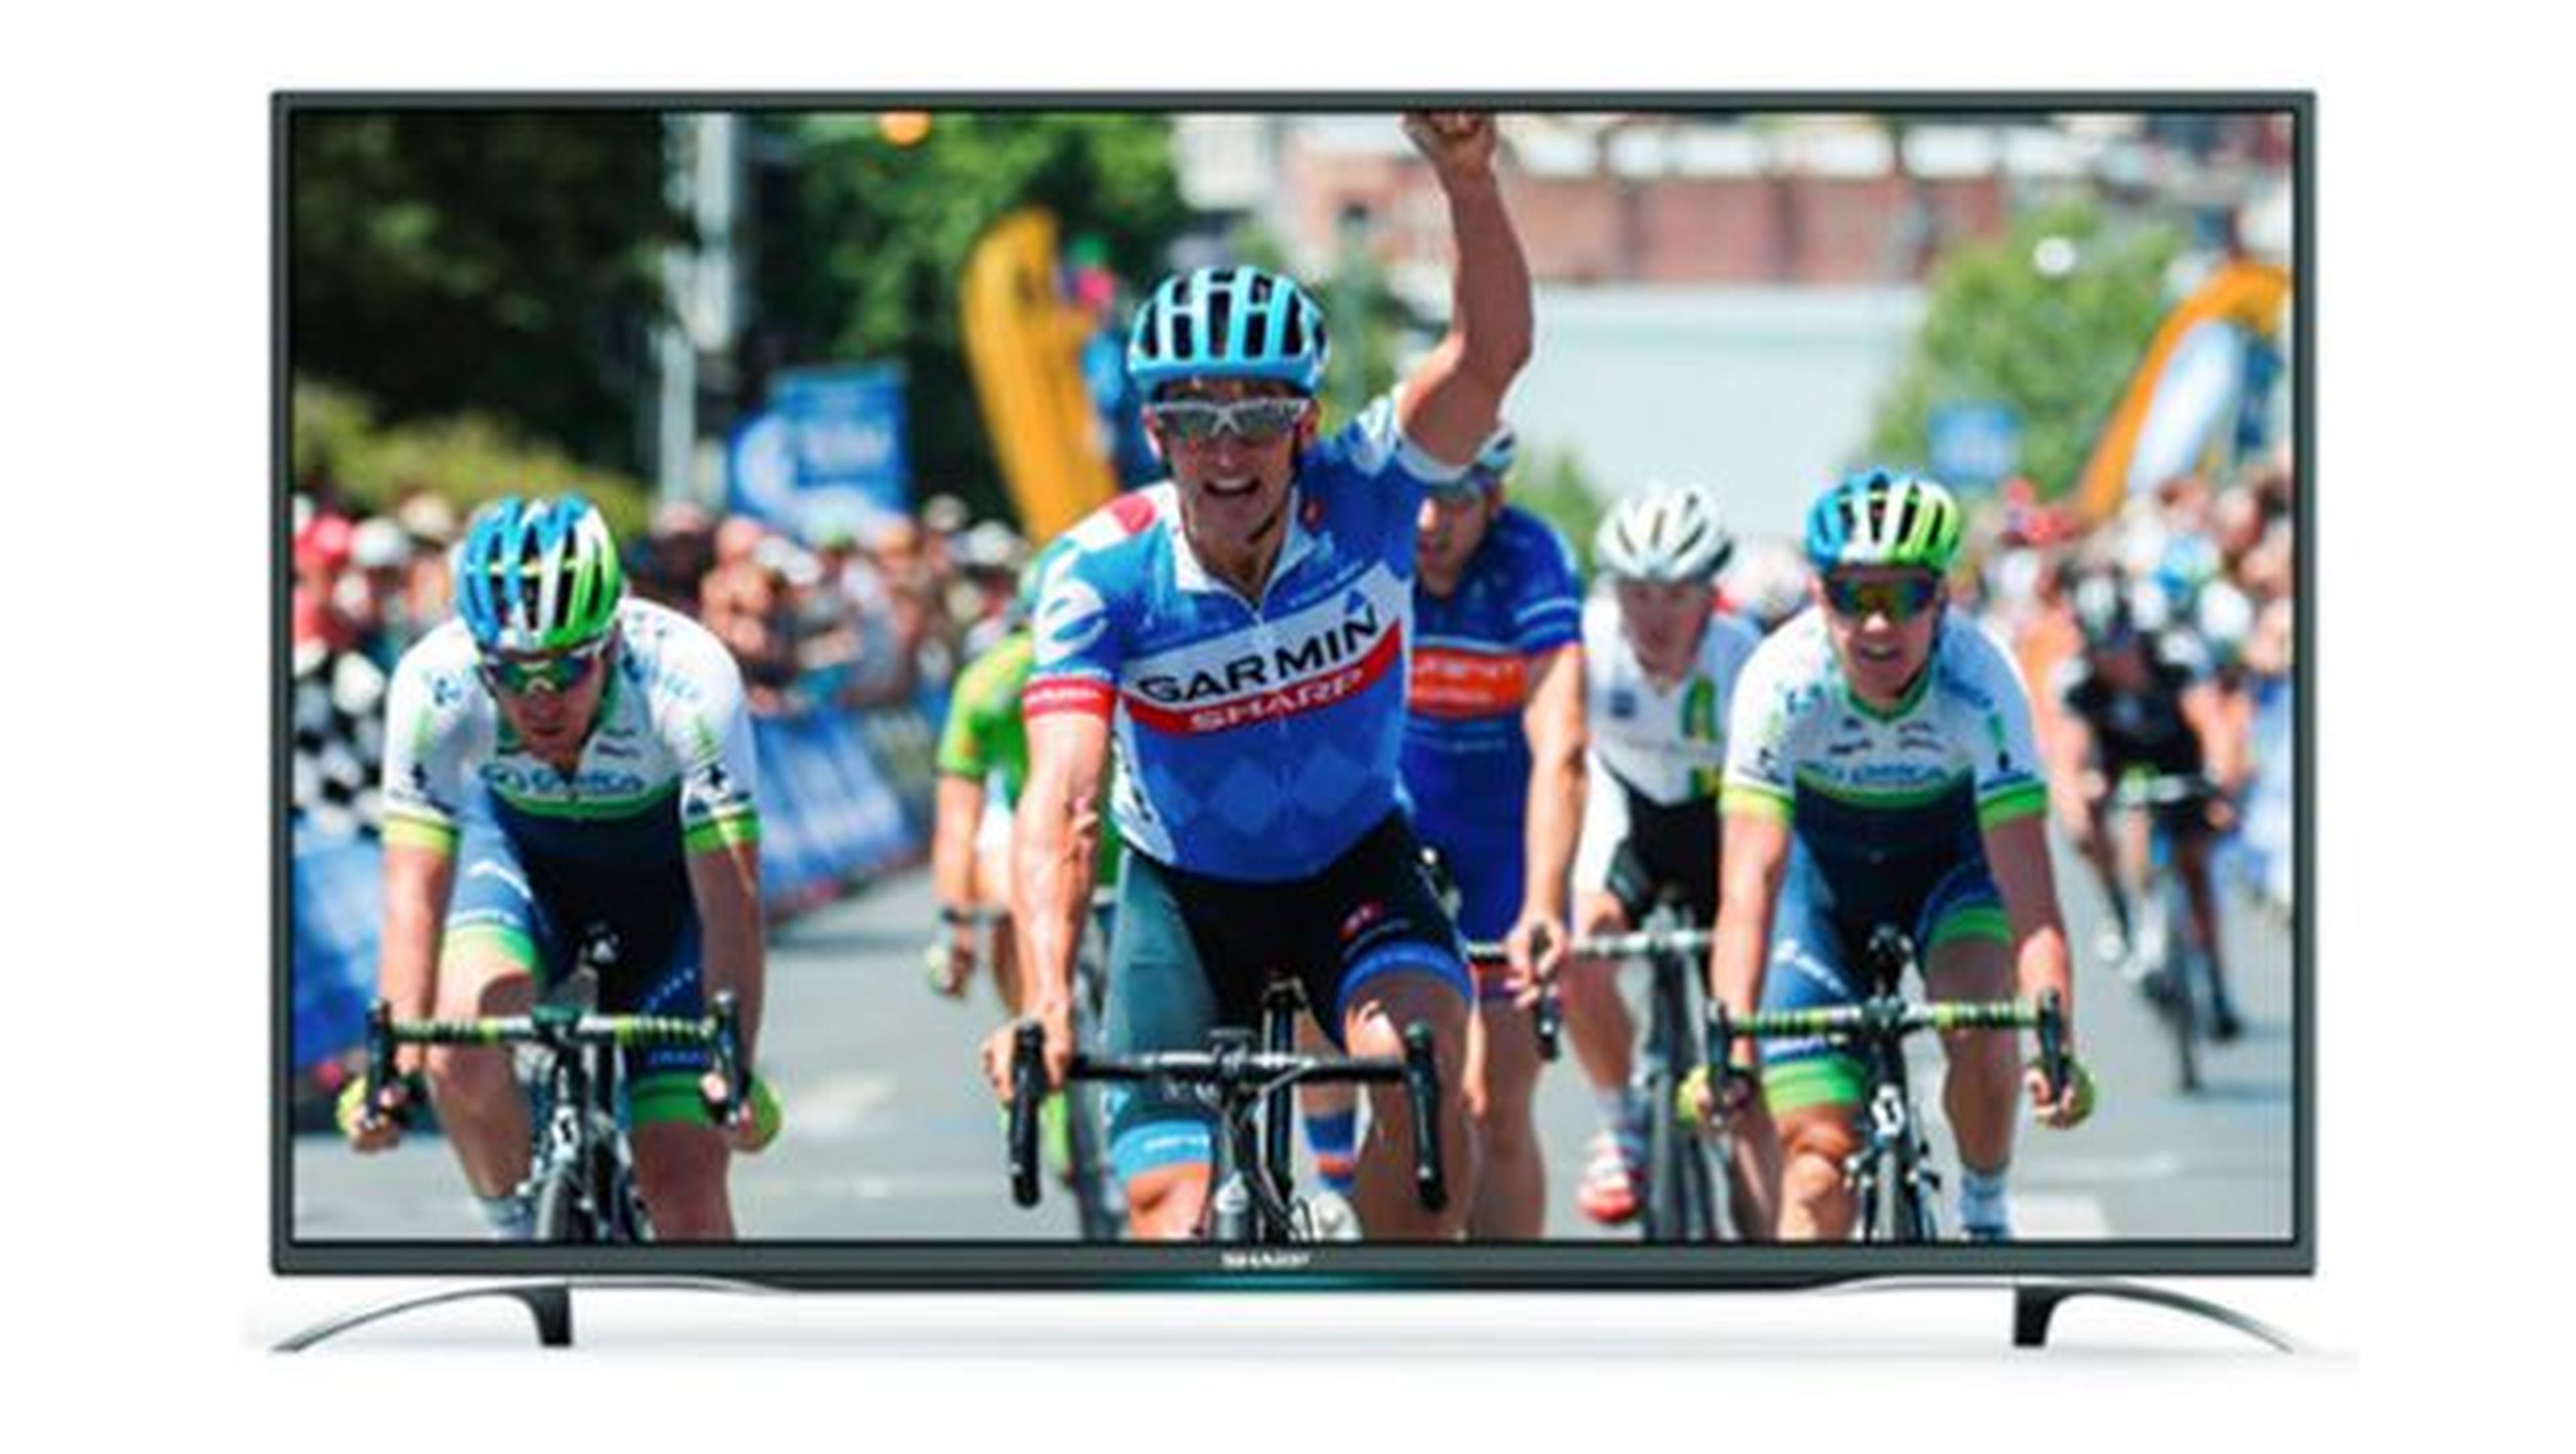 La TV Sharp Aquos LC-43CFE6352E ofrece unas especificaciones realmente interesantes para tratarse de una televisión cuyo precio de venta no llega a 400 euros